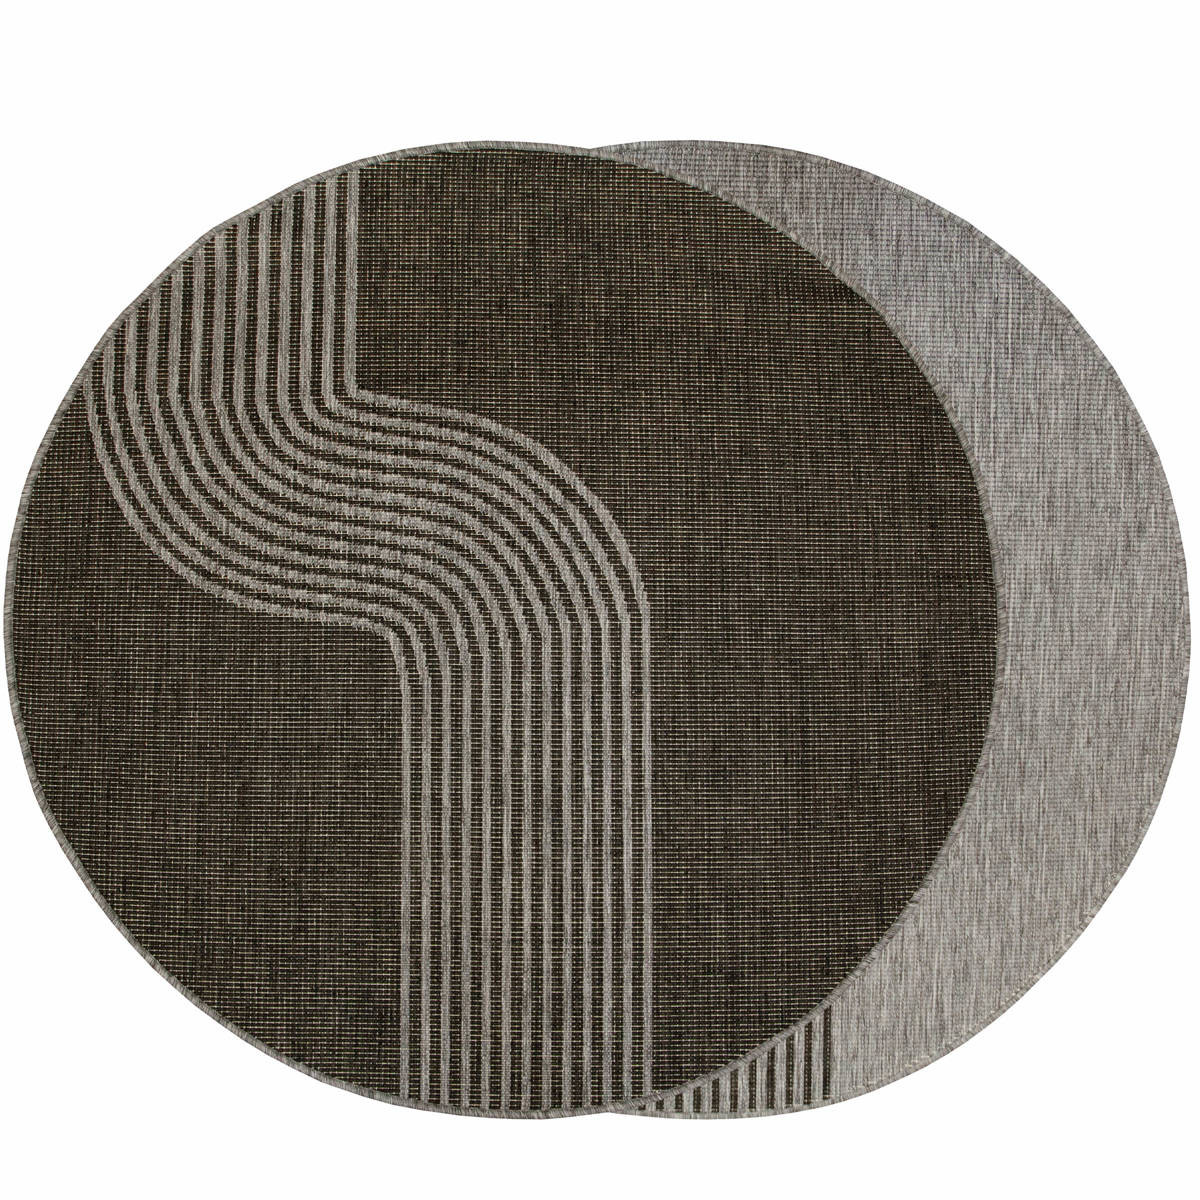 Šnúrkový obojstranný koberec Brussels 205631/11020 sivý / grafitový kruh 